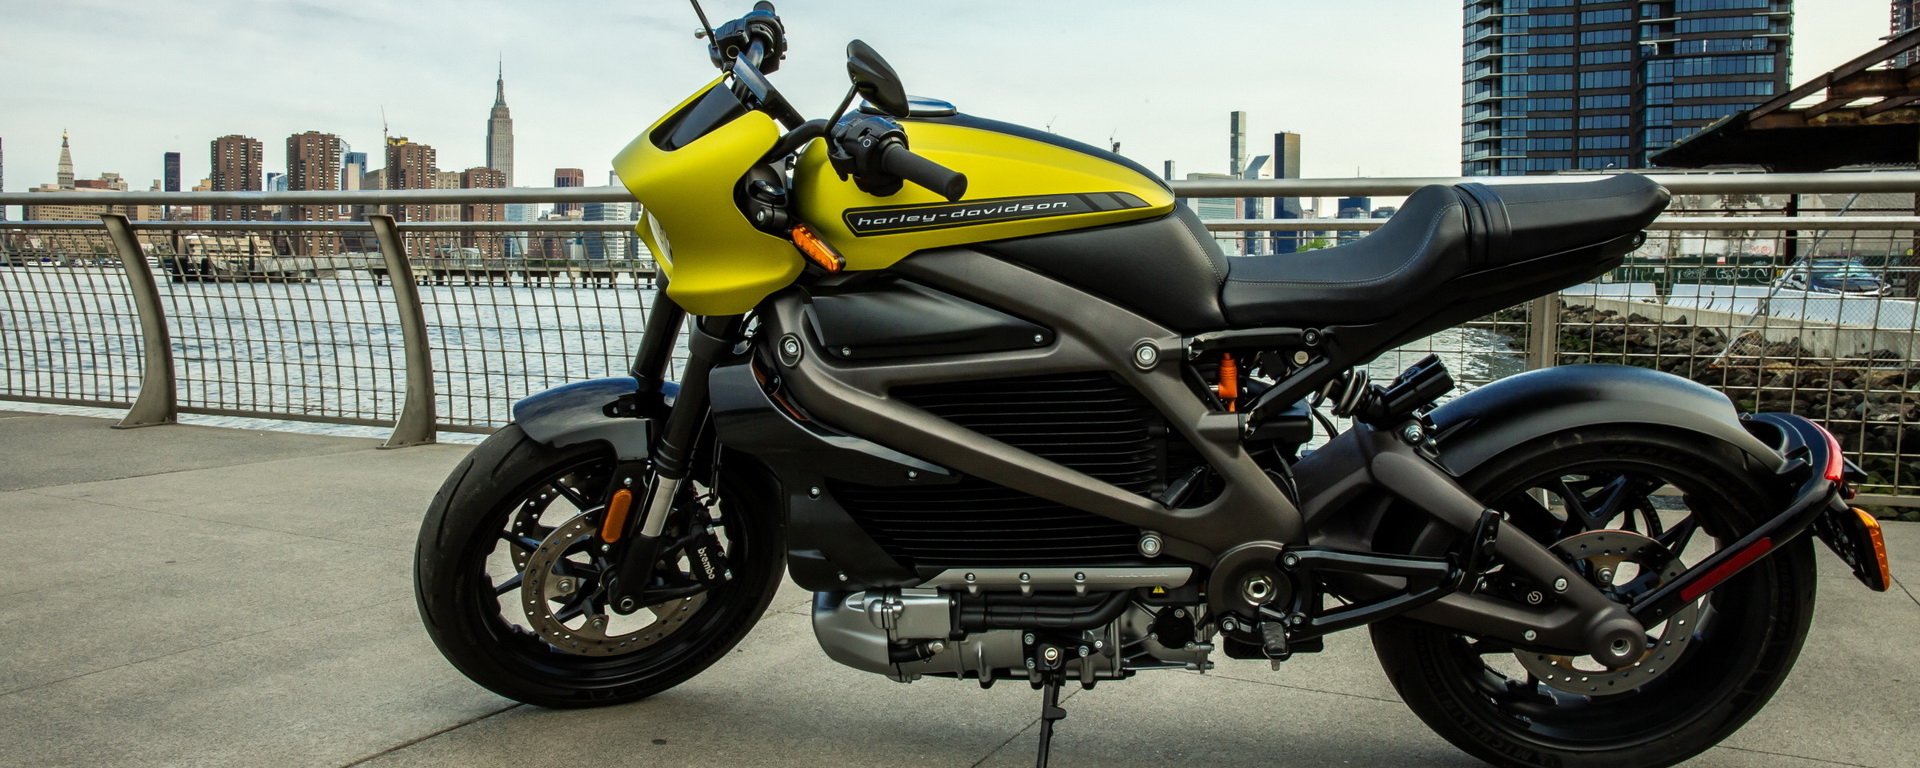 Harley-Davidson раскрывает технические подробности электромотоцикла LiveWire